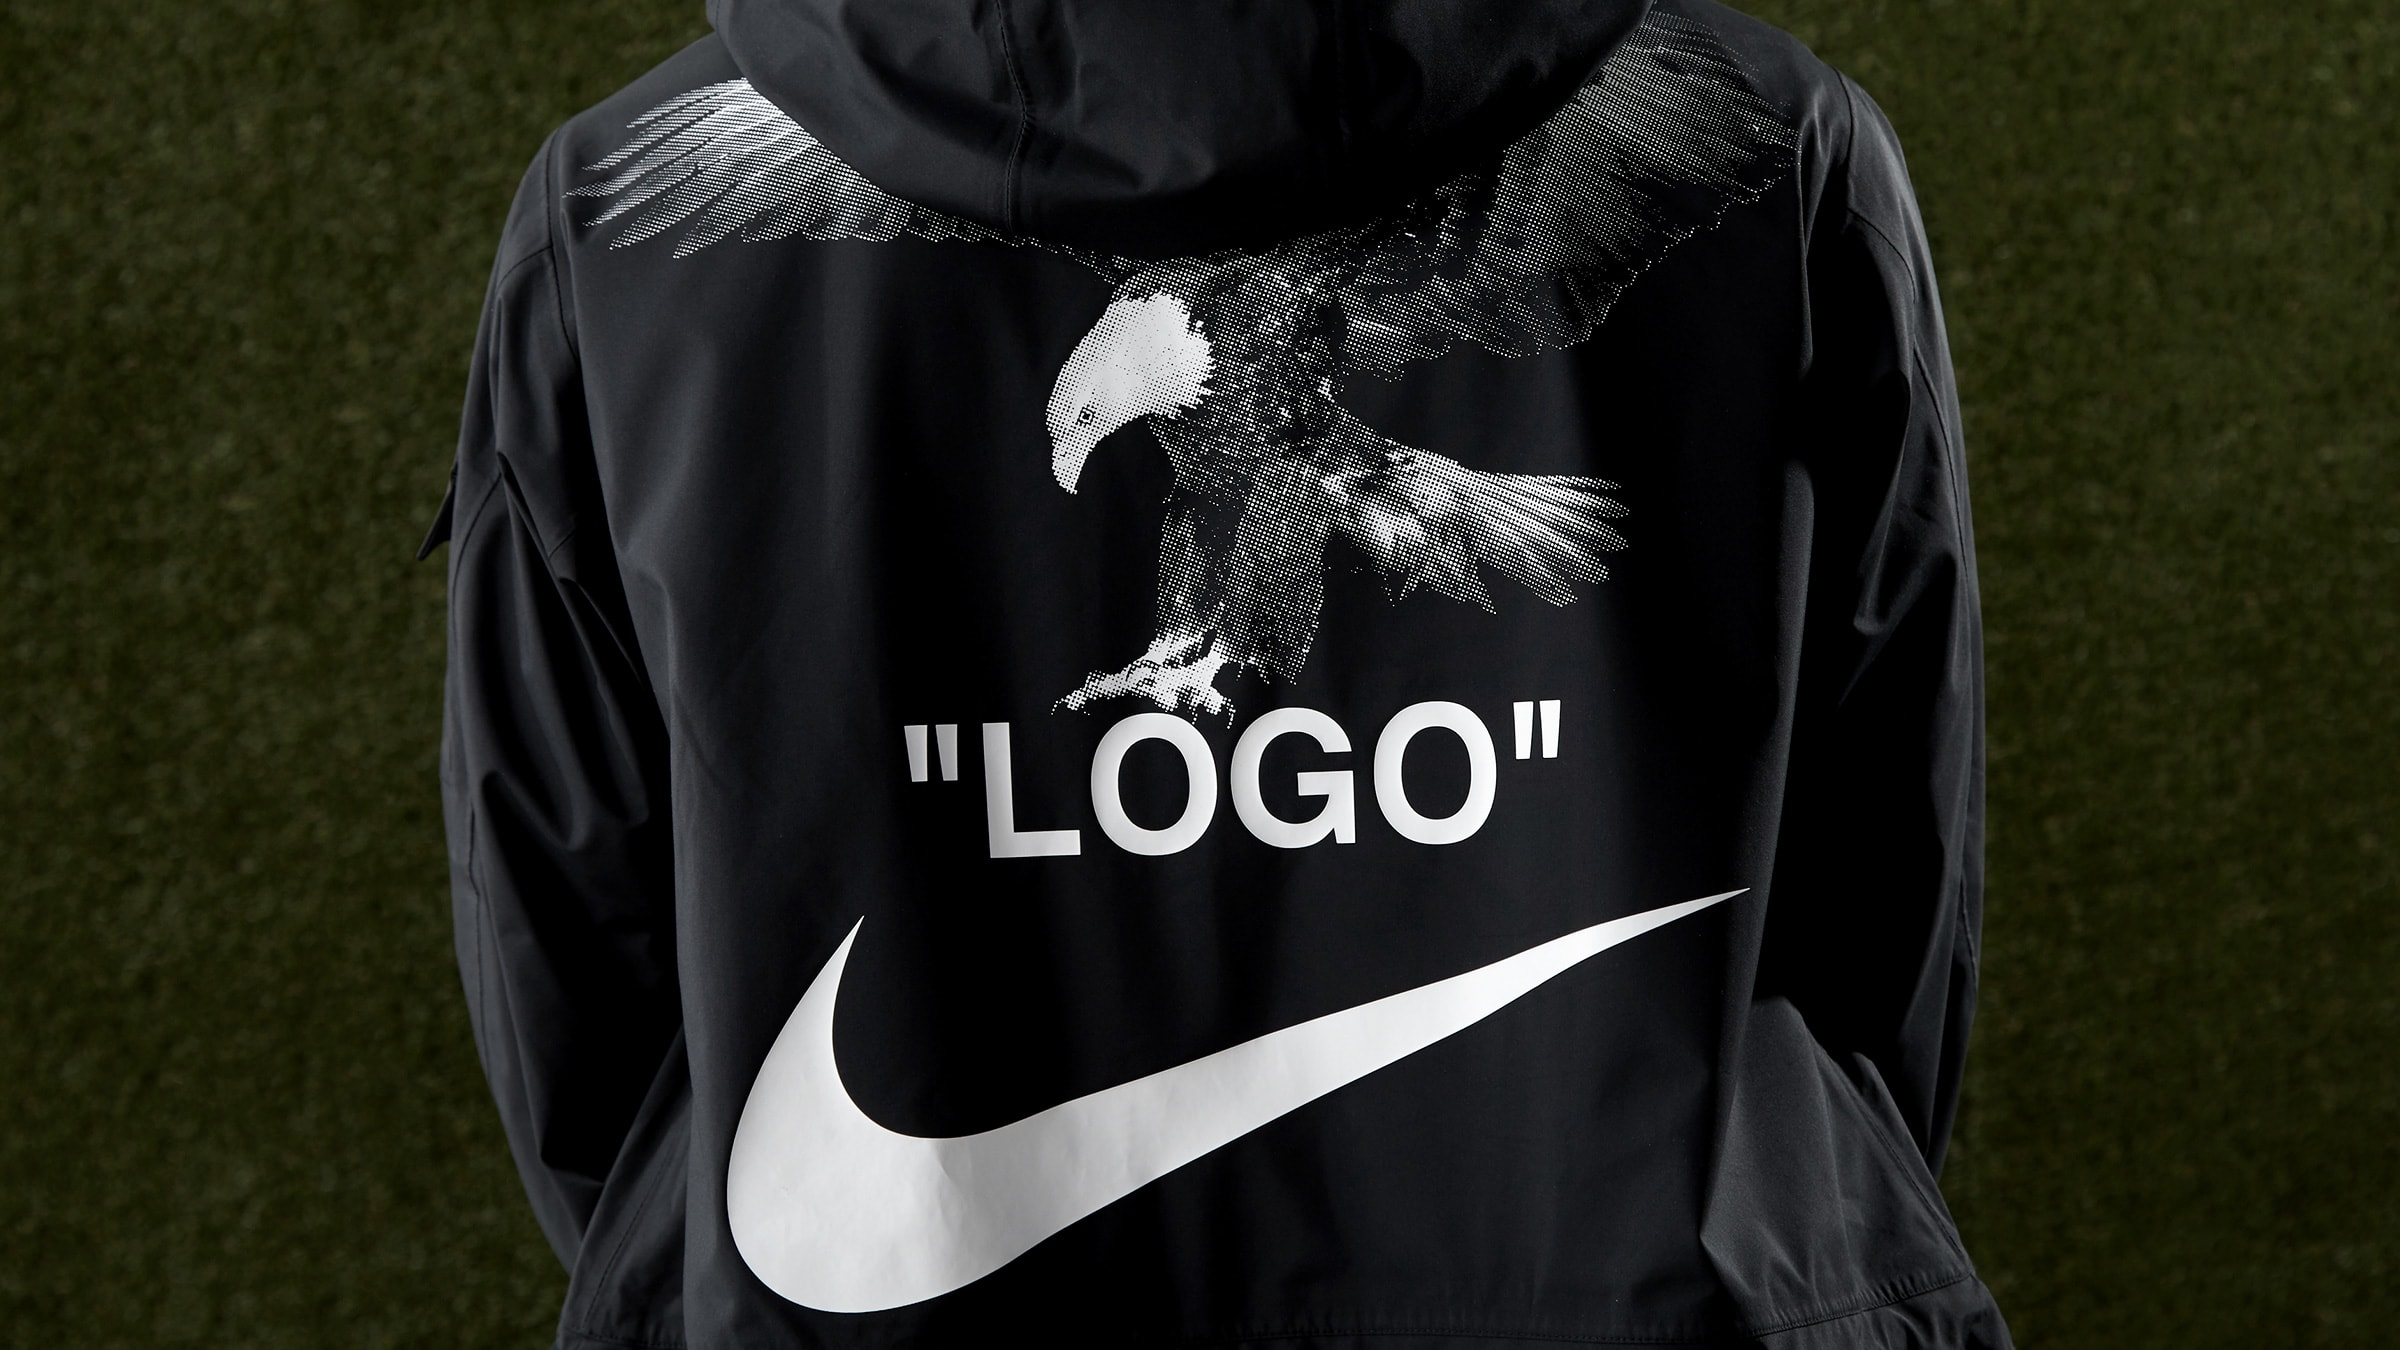 off white nike logo eagle jacket